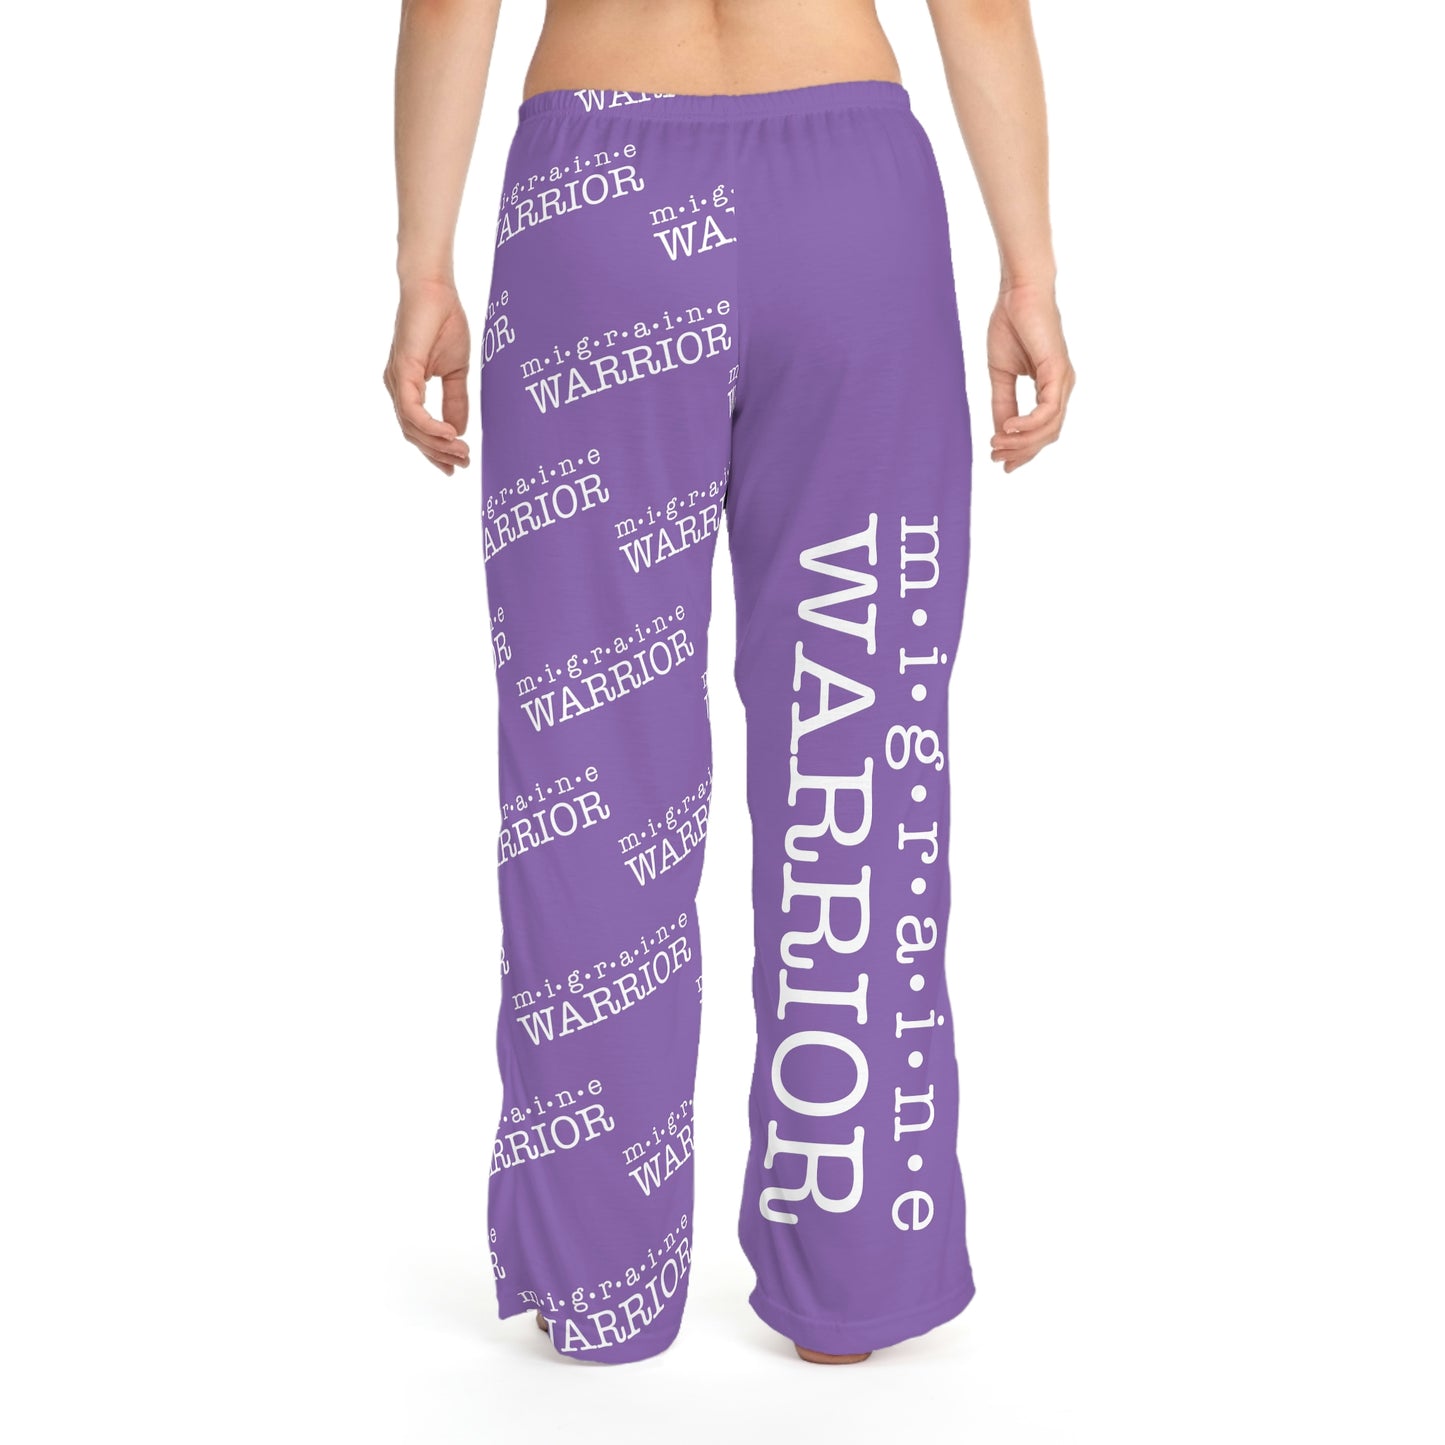 Migraine Warrior Women's Pajama Pants